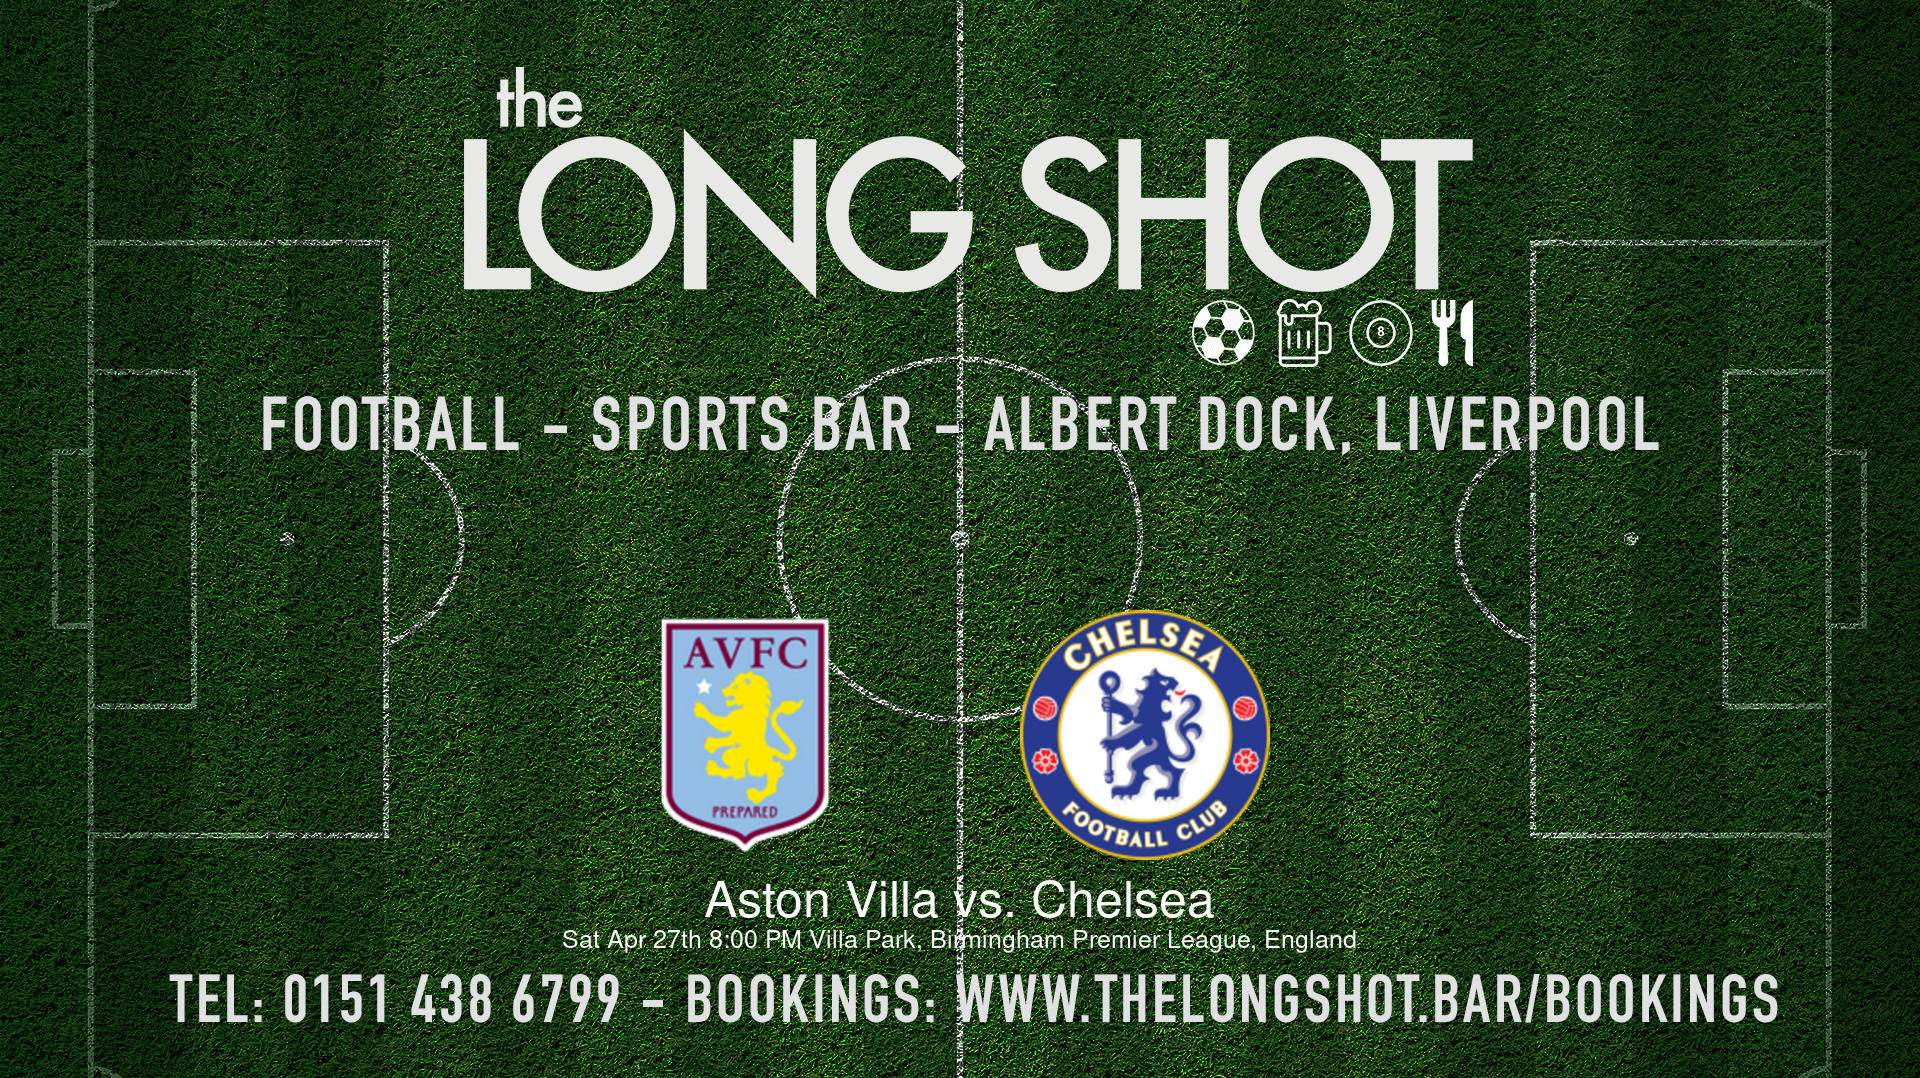 Event image - Aston Villa vs. Chelsea